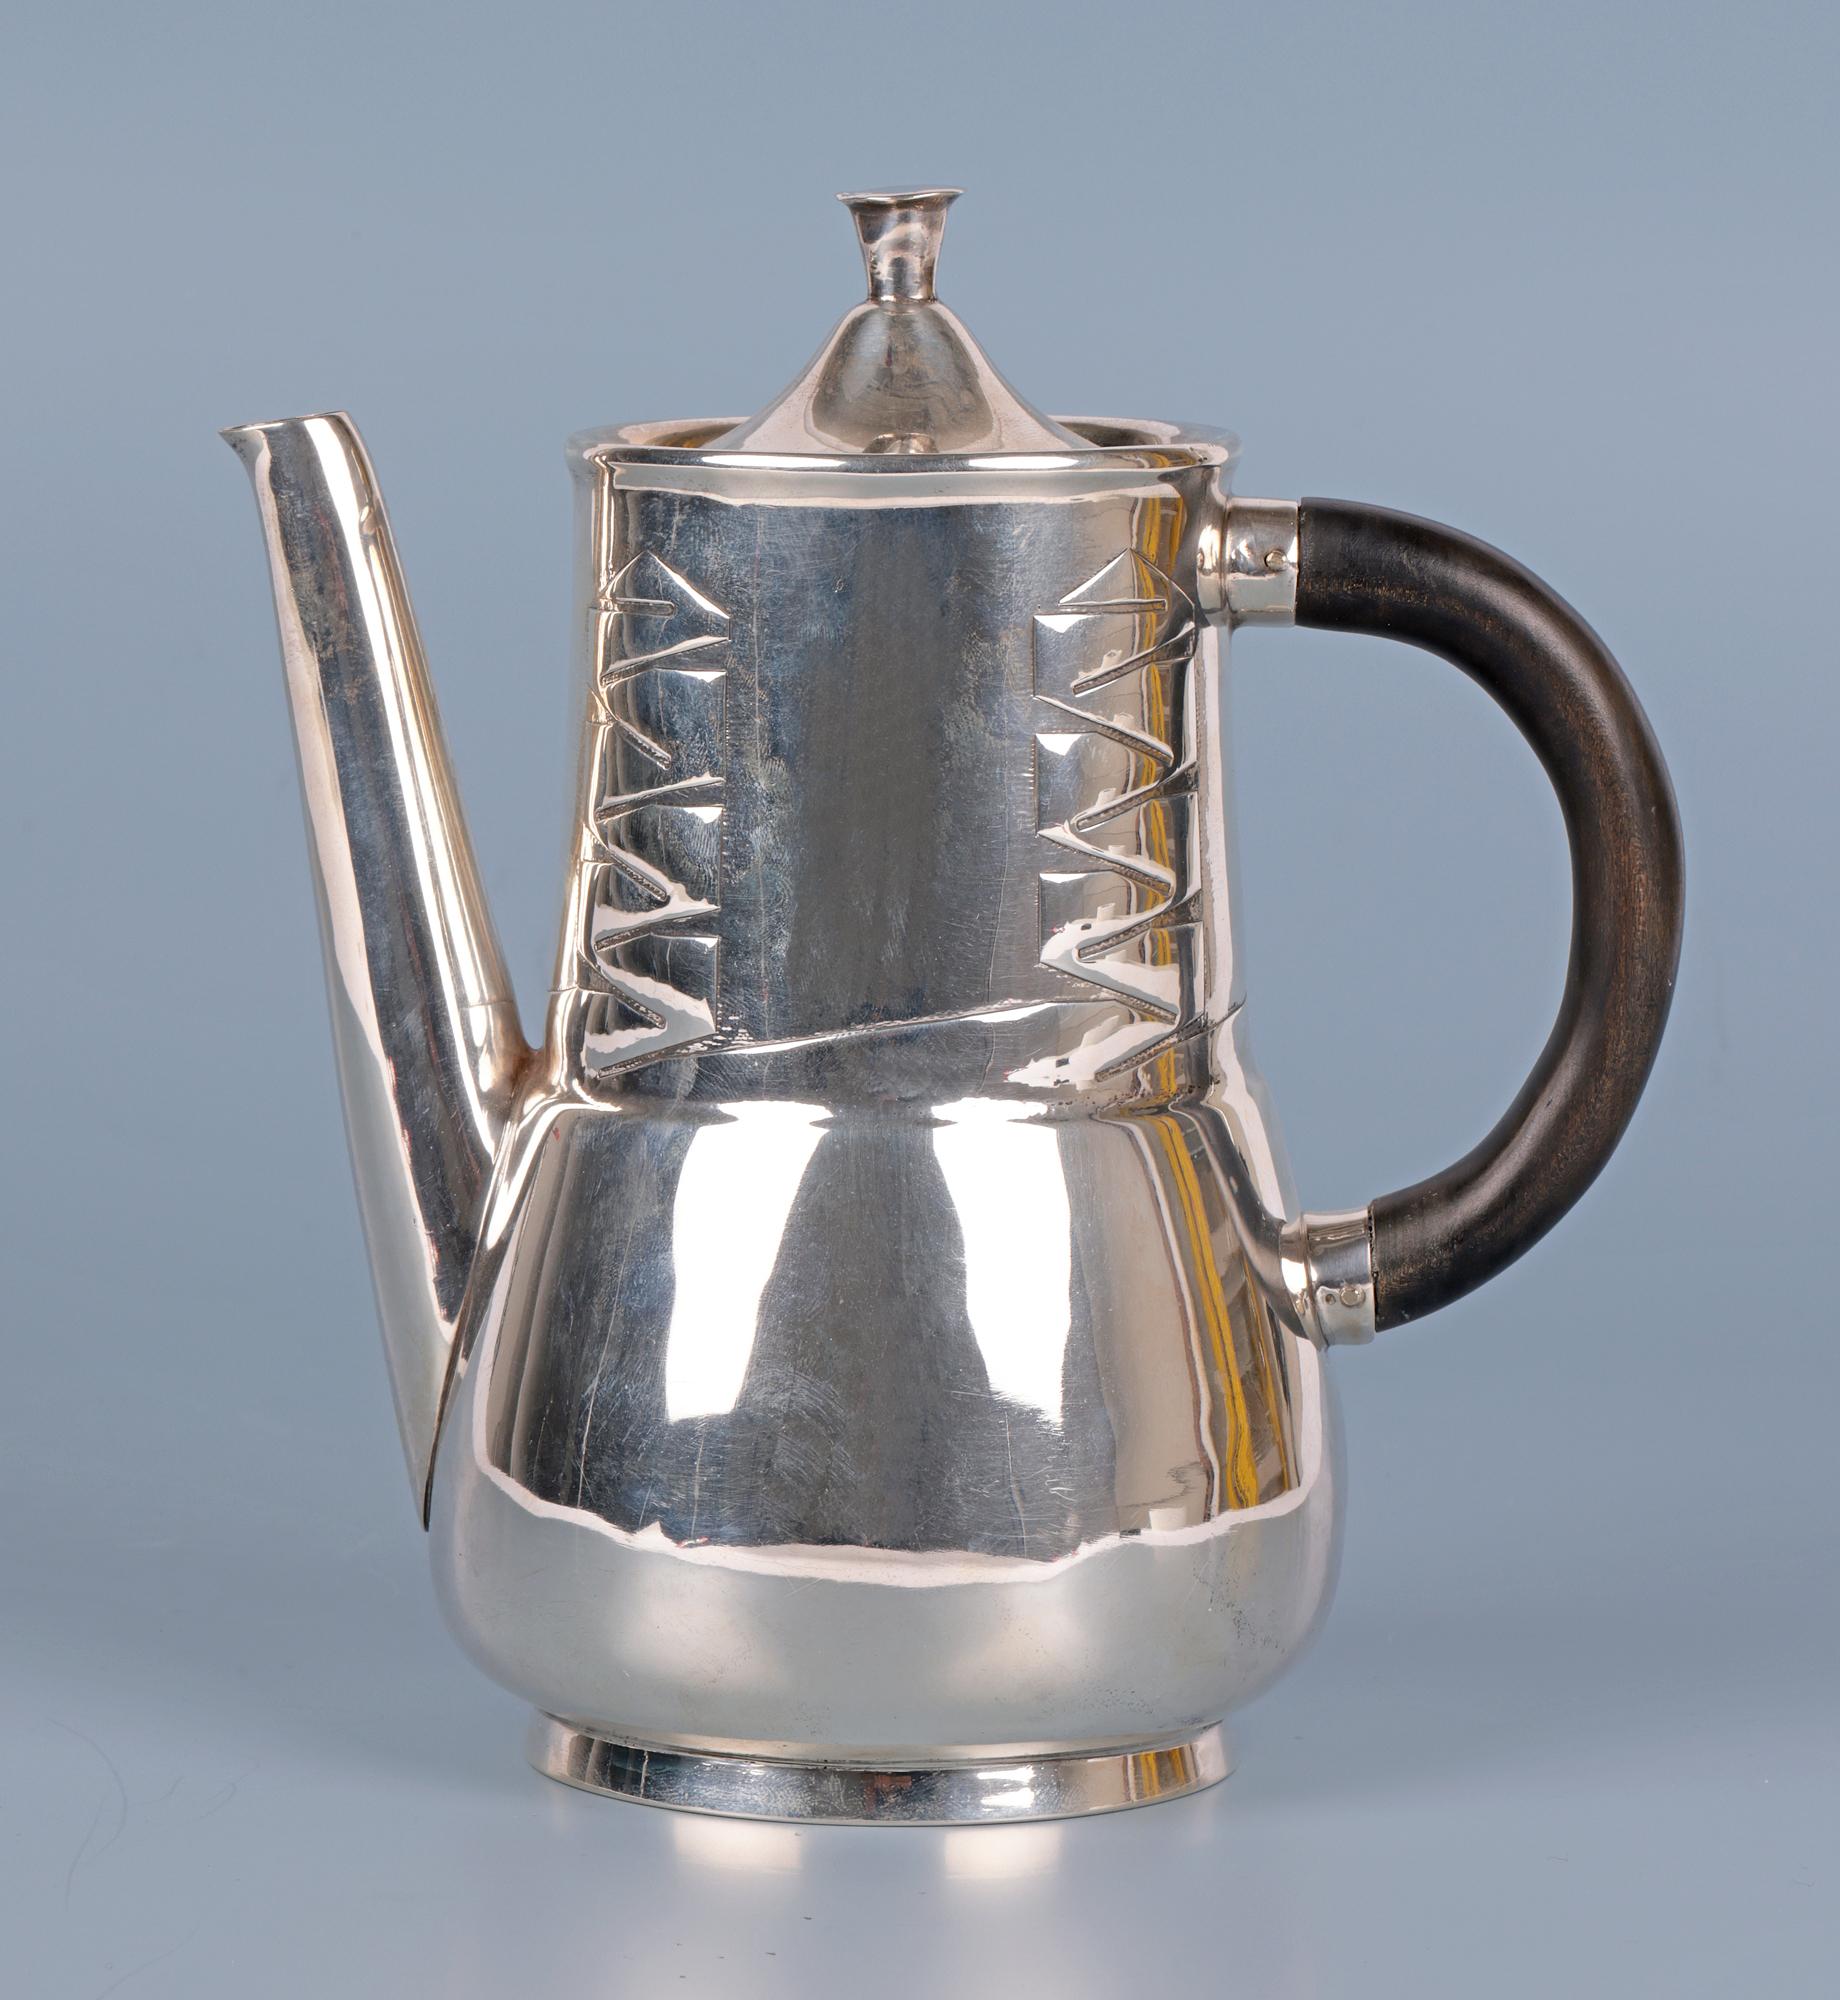  Archibald Knox Liberty & Co Silver Art Nouveau Silver Teapot For Sale 8